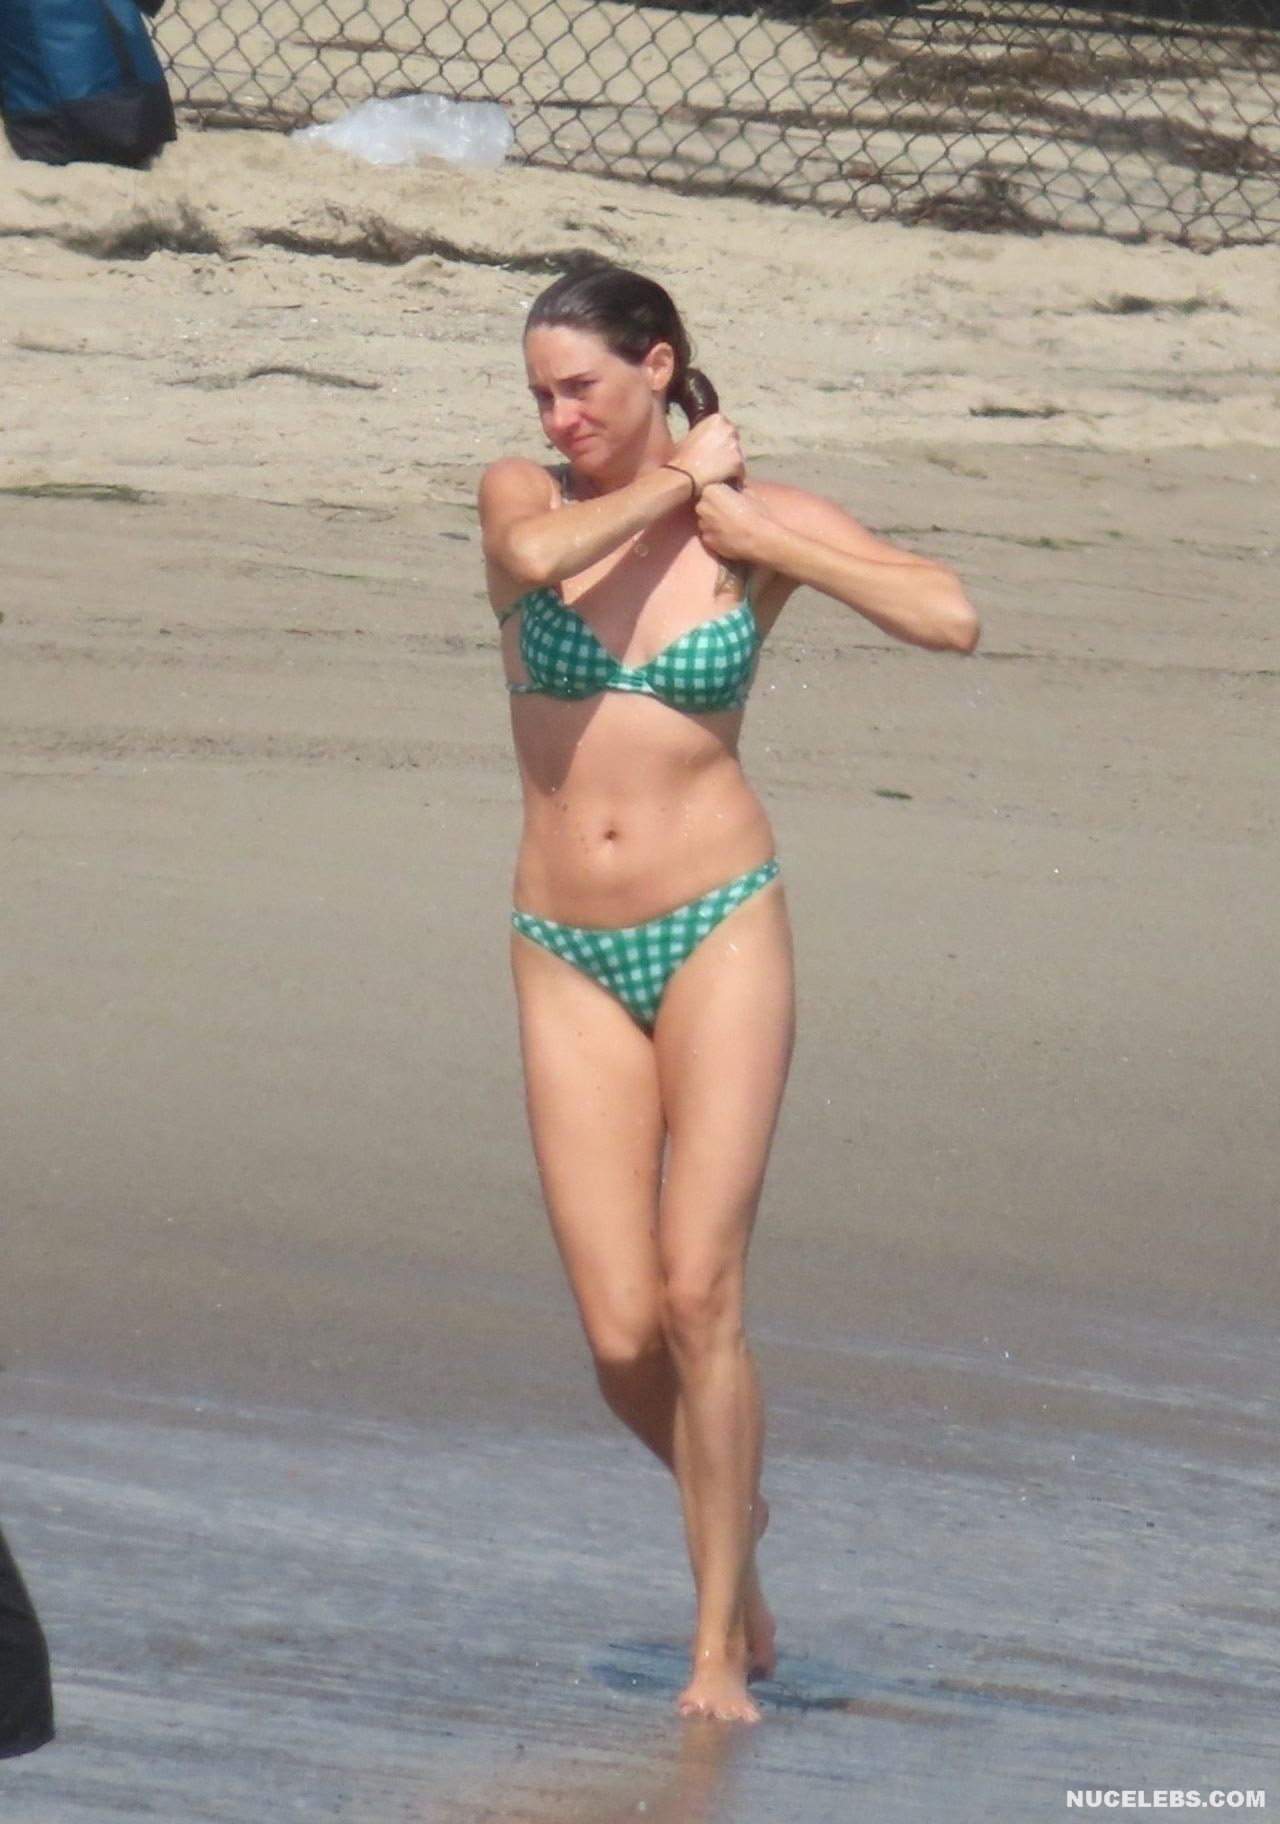 Shailene Woodley bikini beach pics